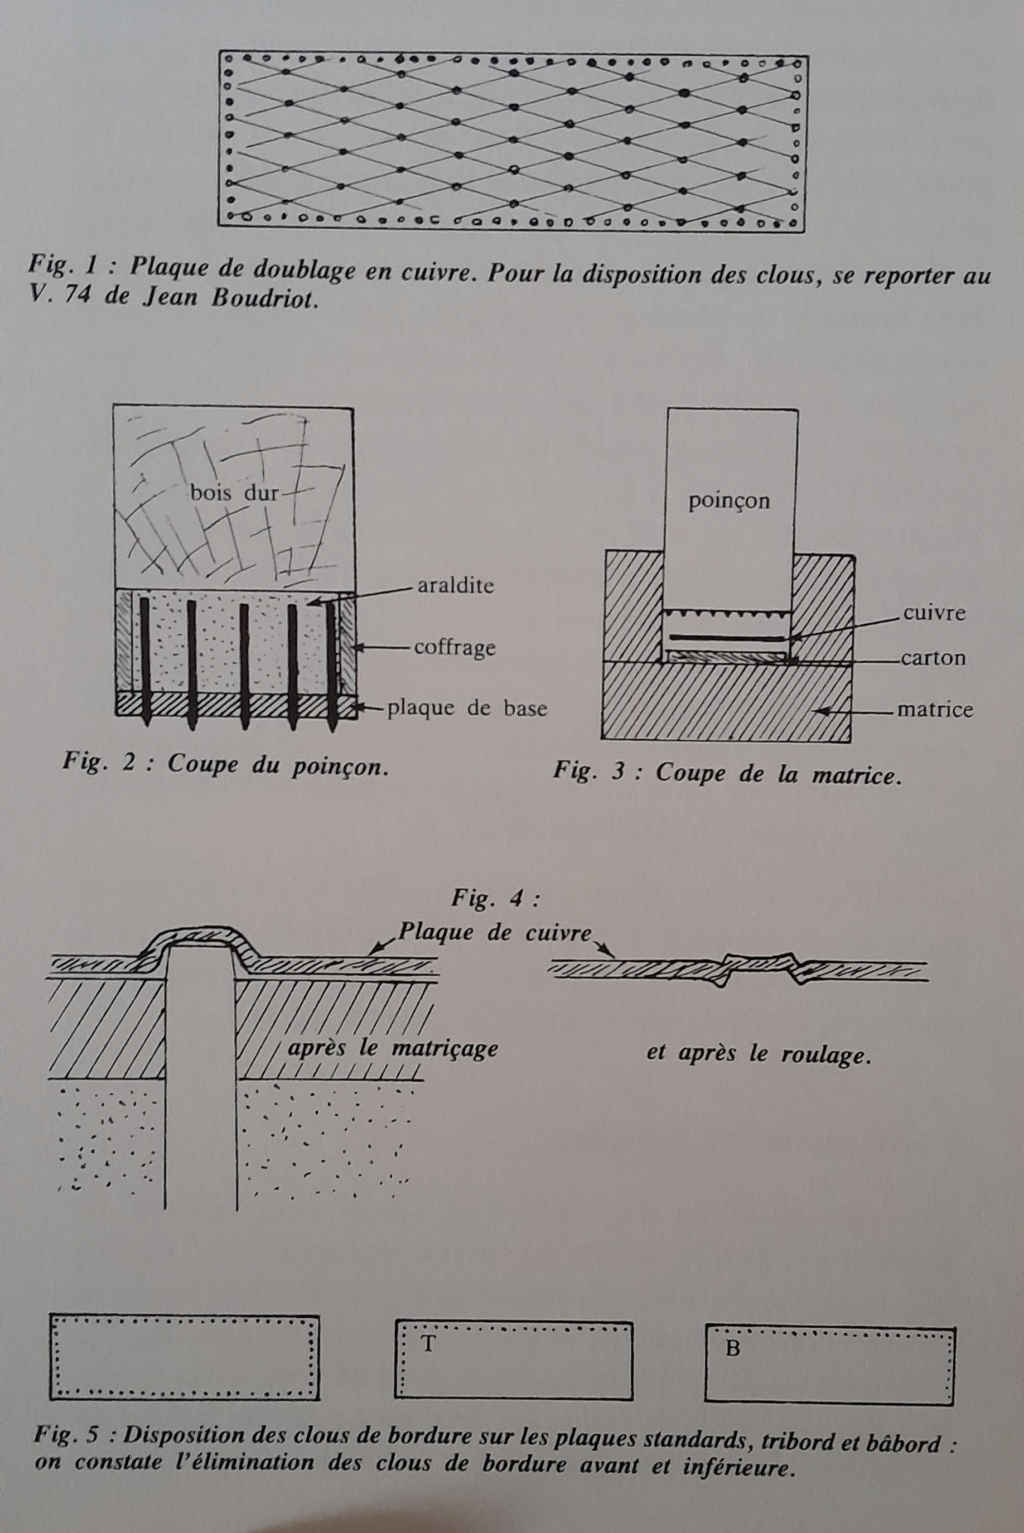 Corvette La Créole [plan J. Boudriot 1/48°] de JM-MAI33 - Page 2 20240115